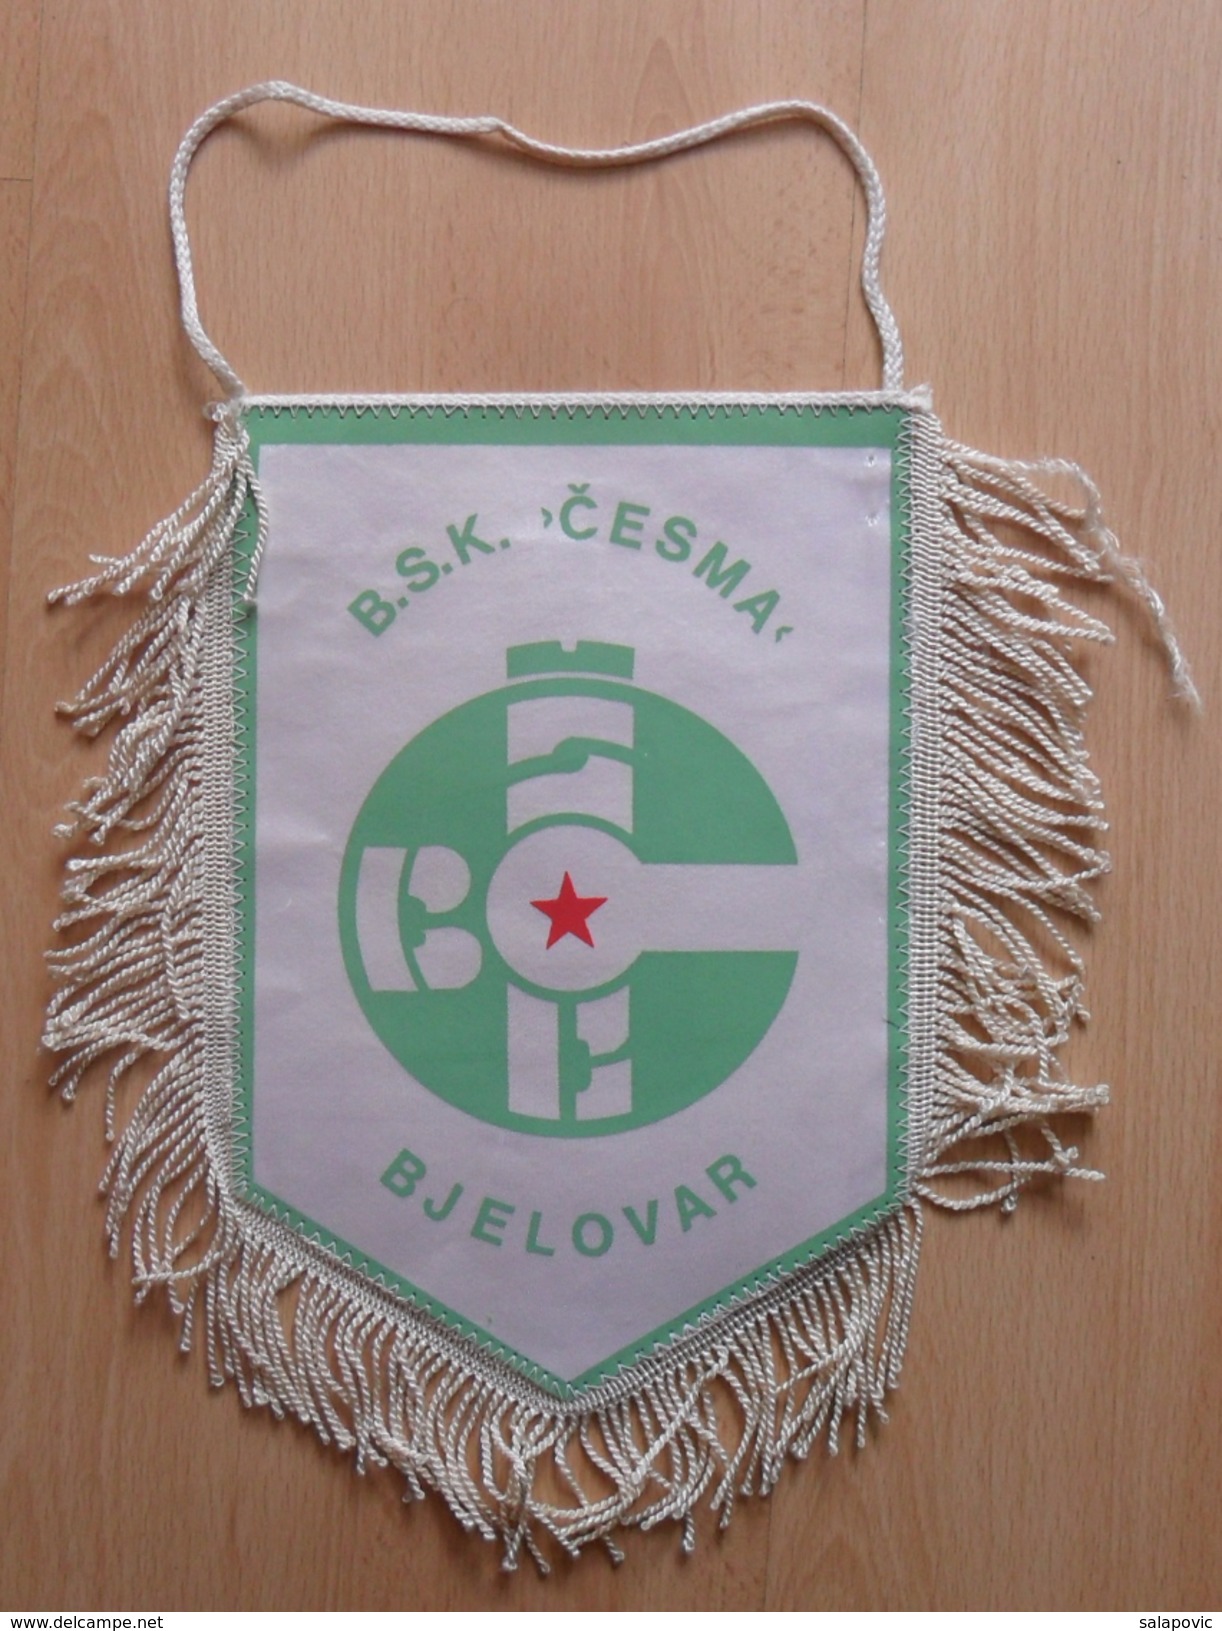 BSK CESMA BJELOVAR Croatia  FOOTBALL CLUB, SOCCER / FUTBOL / CALCIO  OLD PENNANT, SPORTS FLAG - Apparel, Souvenirs & Other